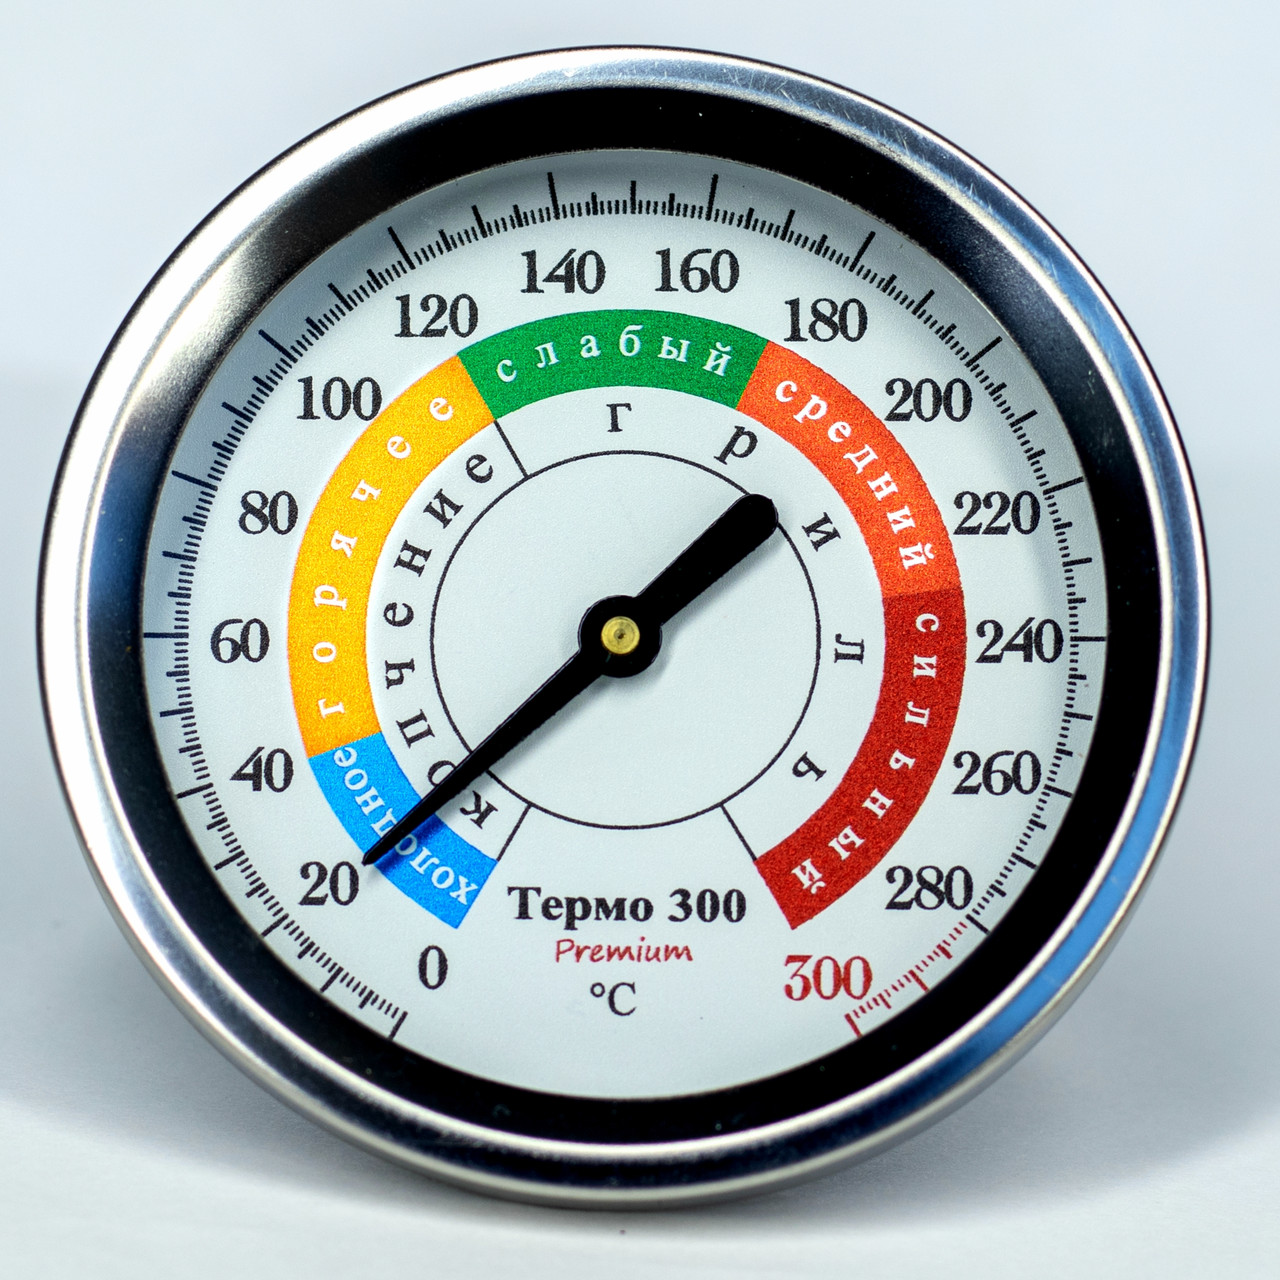 Термометр для коптильни TERMO 300 Premium 0-300⁰С: продажа, цена в .